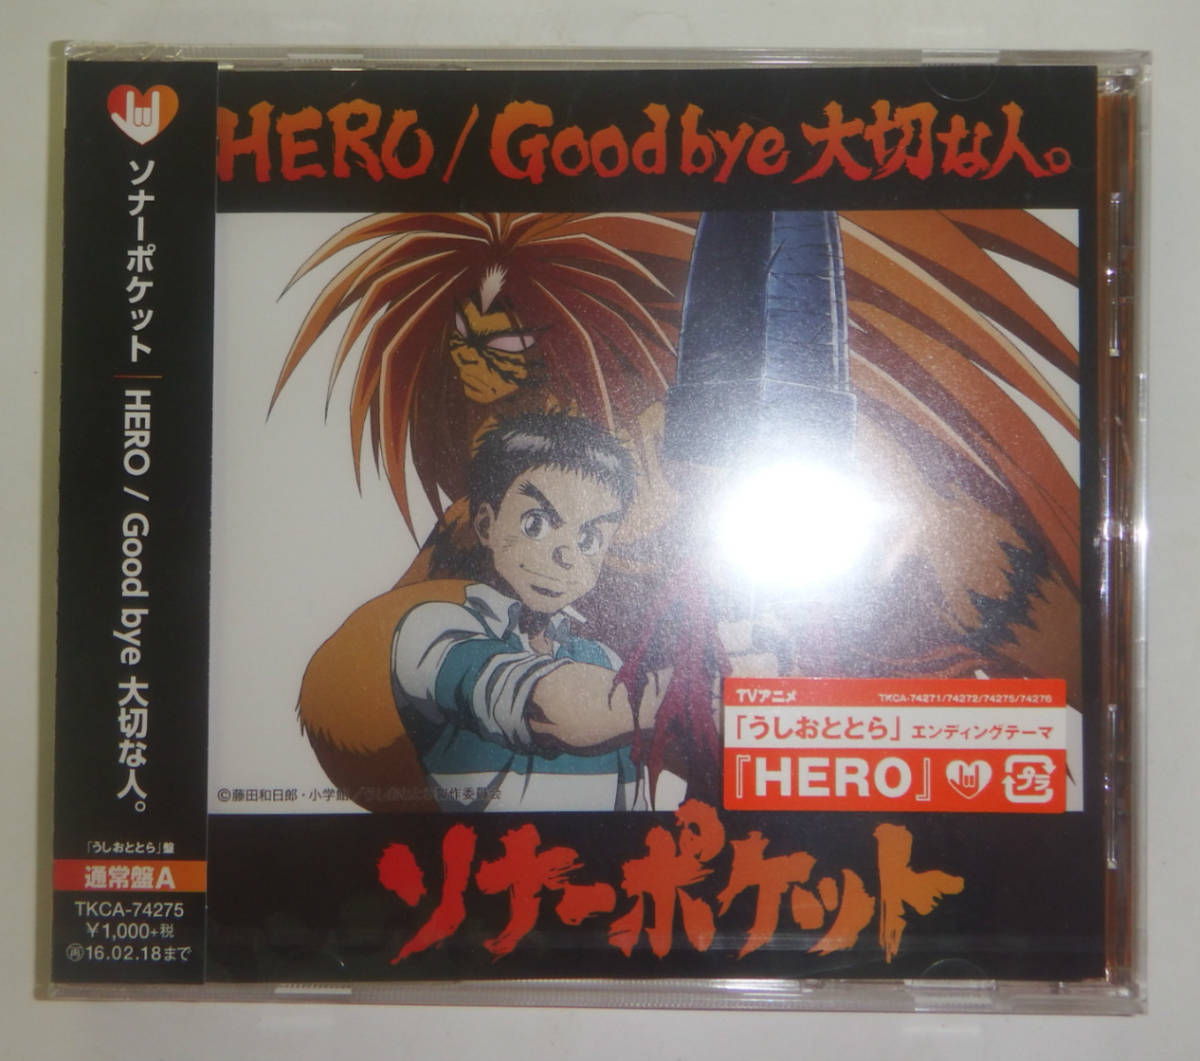 新品CD HERO/Good bye 大切な人。通常盤A うしおととら盤 ソナーポケット_画像1